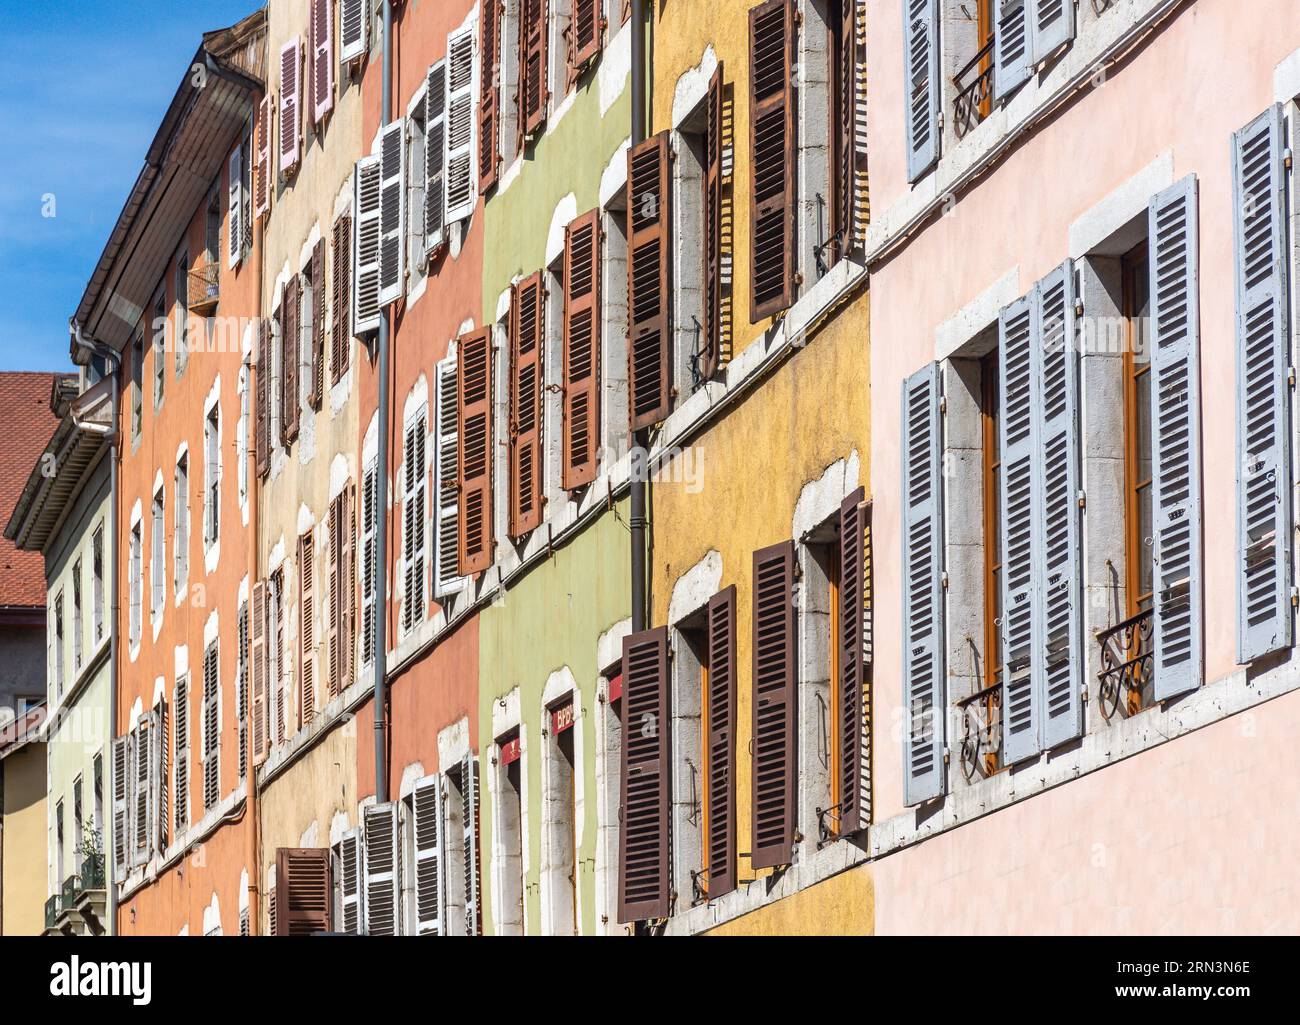 Old house facades with shutters, Rue Jean-Jacques Rousseau, Vieille Ville, Annecy, Haute-Savoie, Auvergne-Rhône-Alpes, France Stock Photo